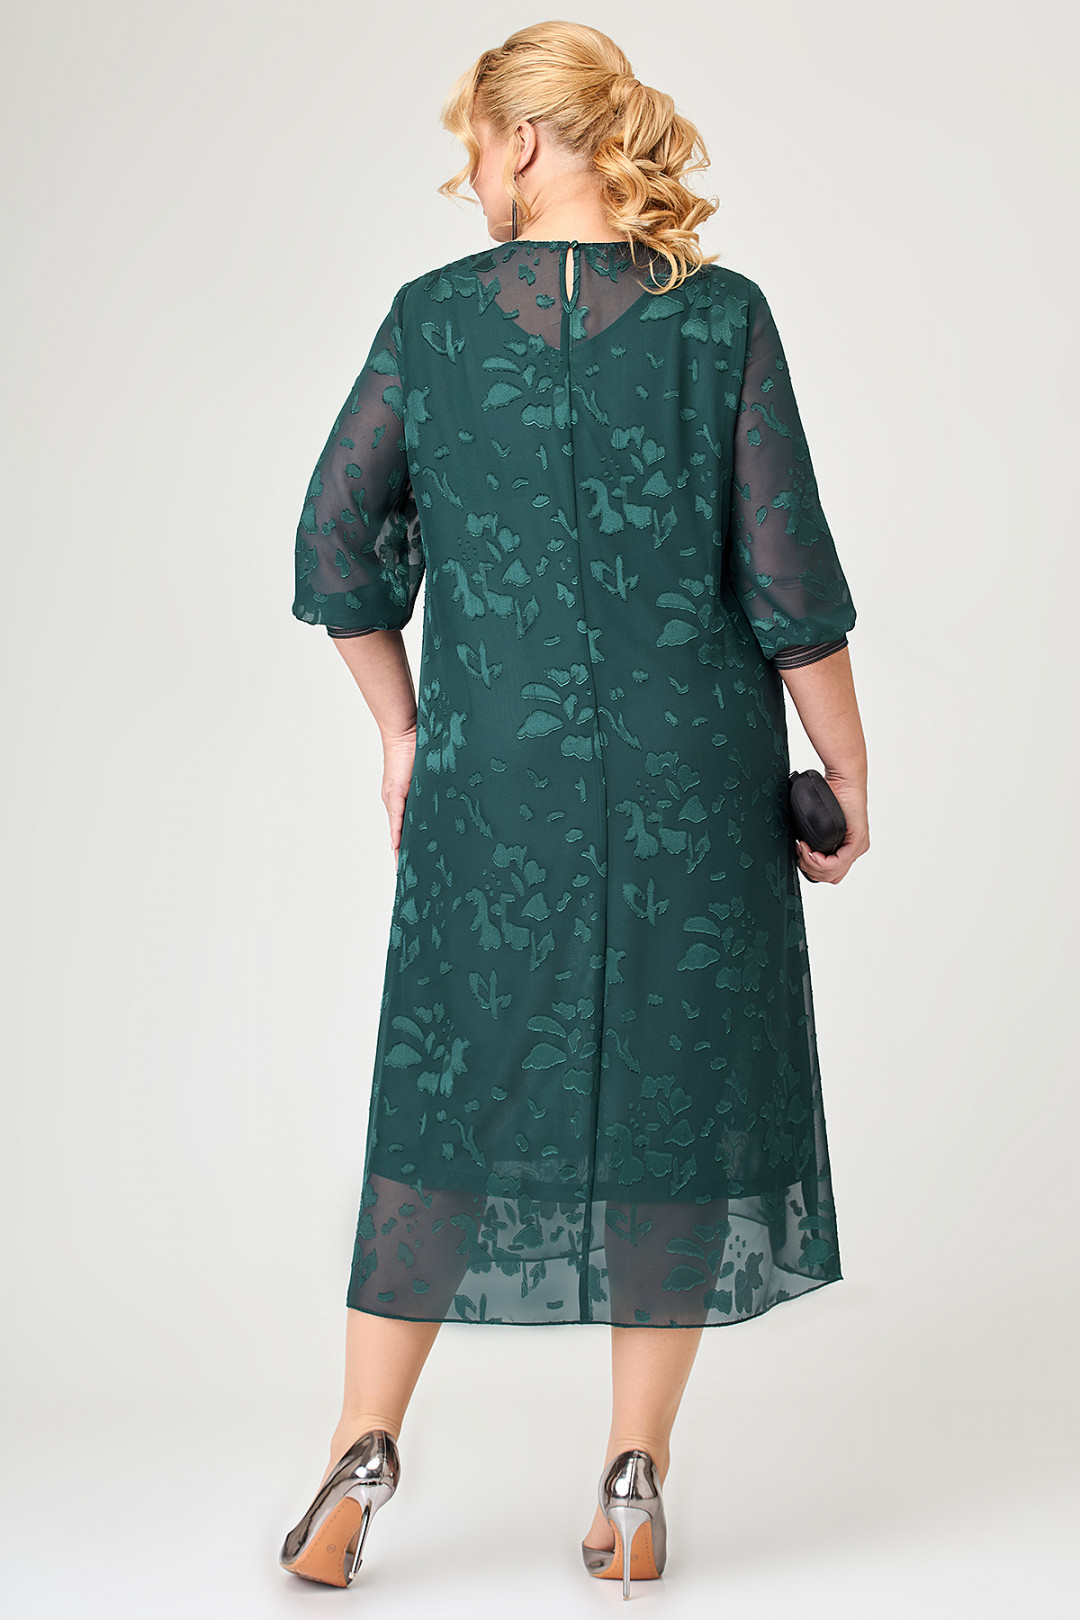 Платье ALGRANDA (Новелла Шарм) A3836-4